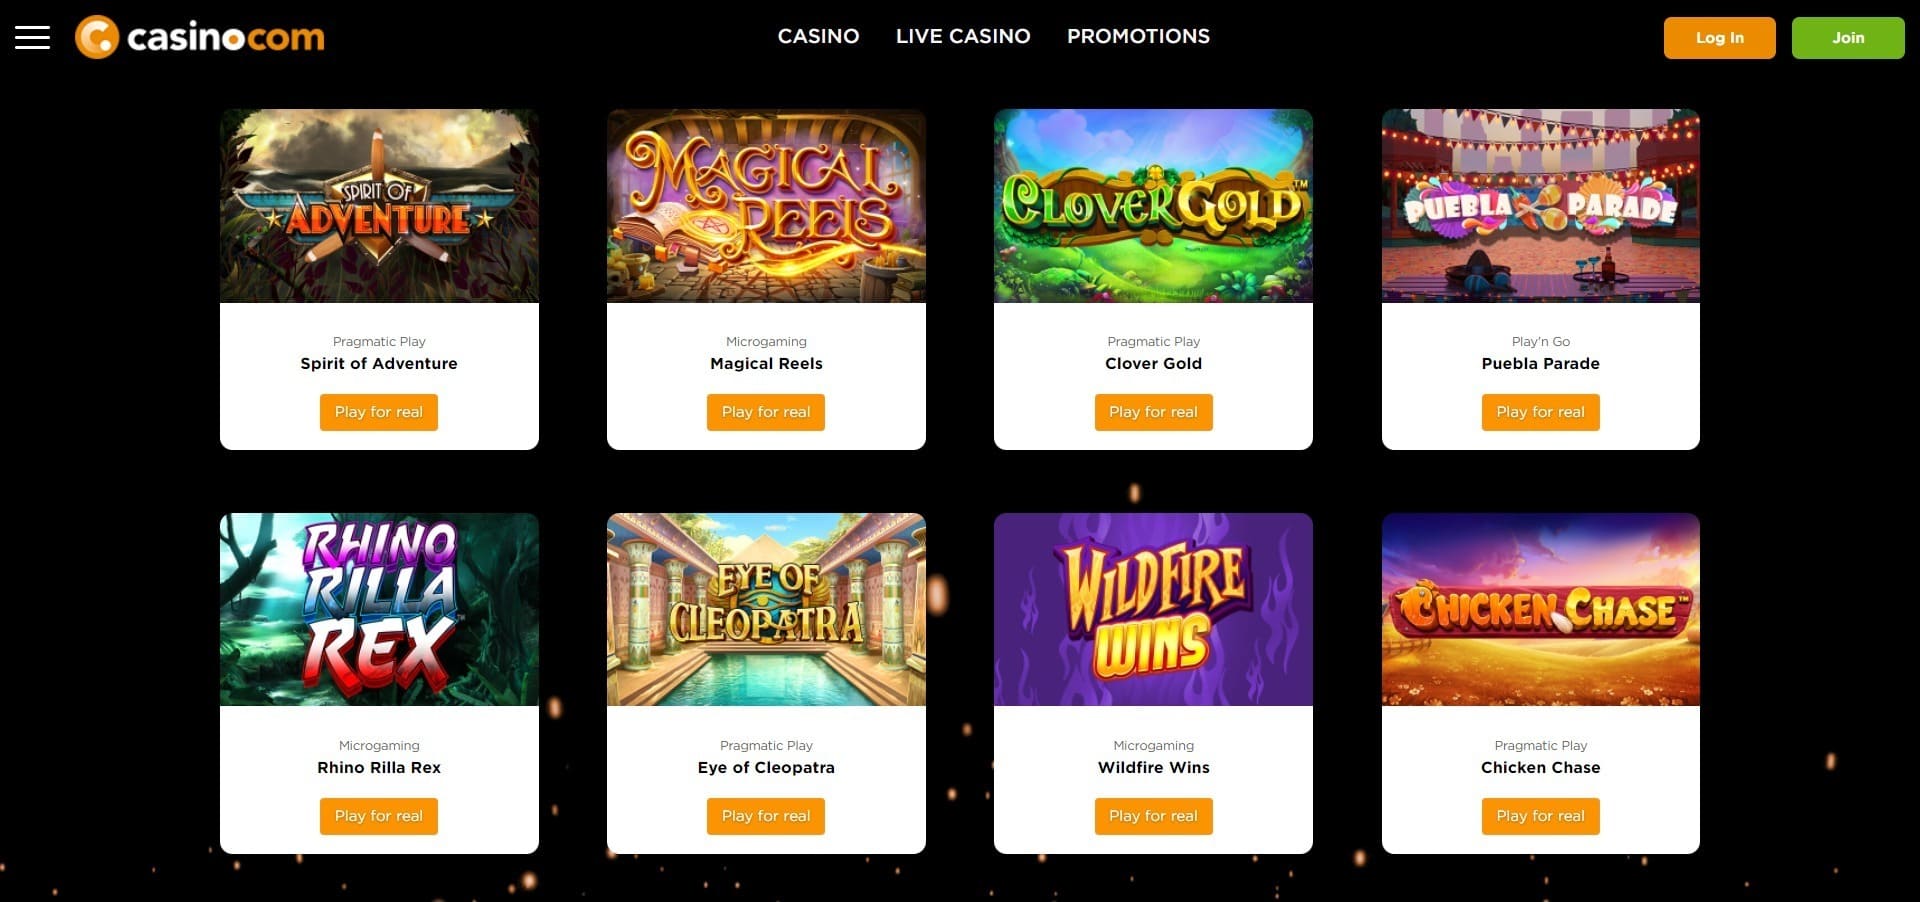 Casino.com slot machines